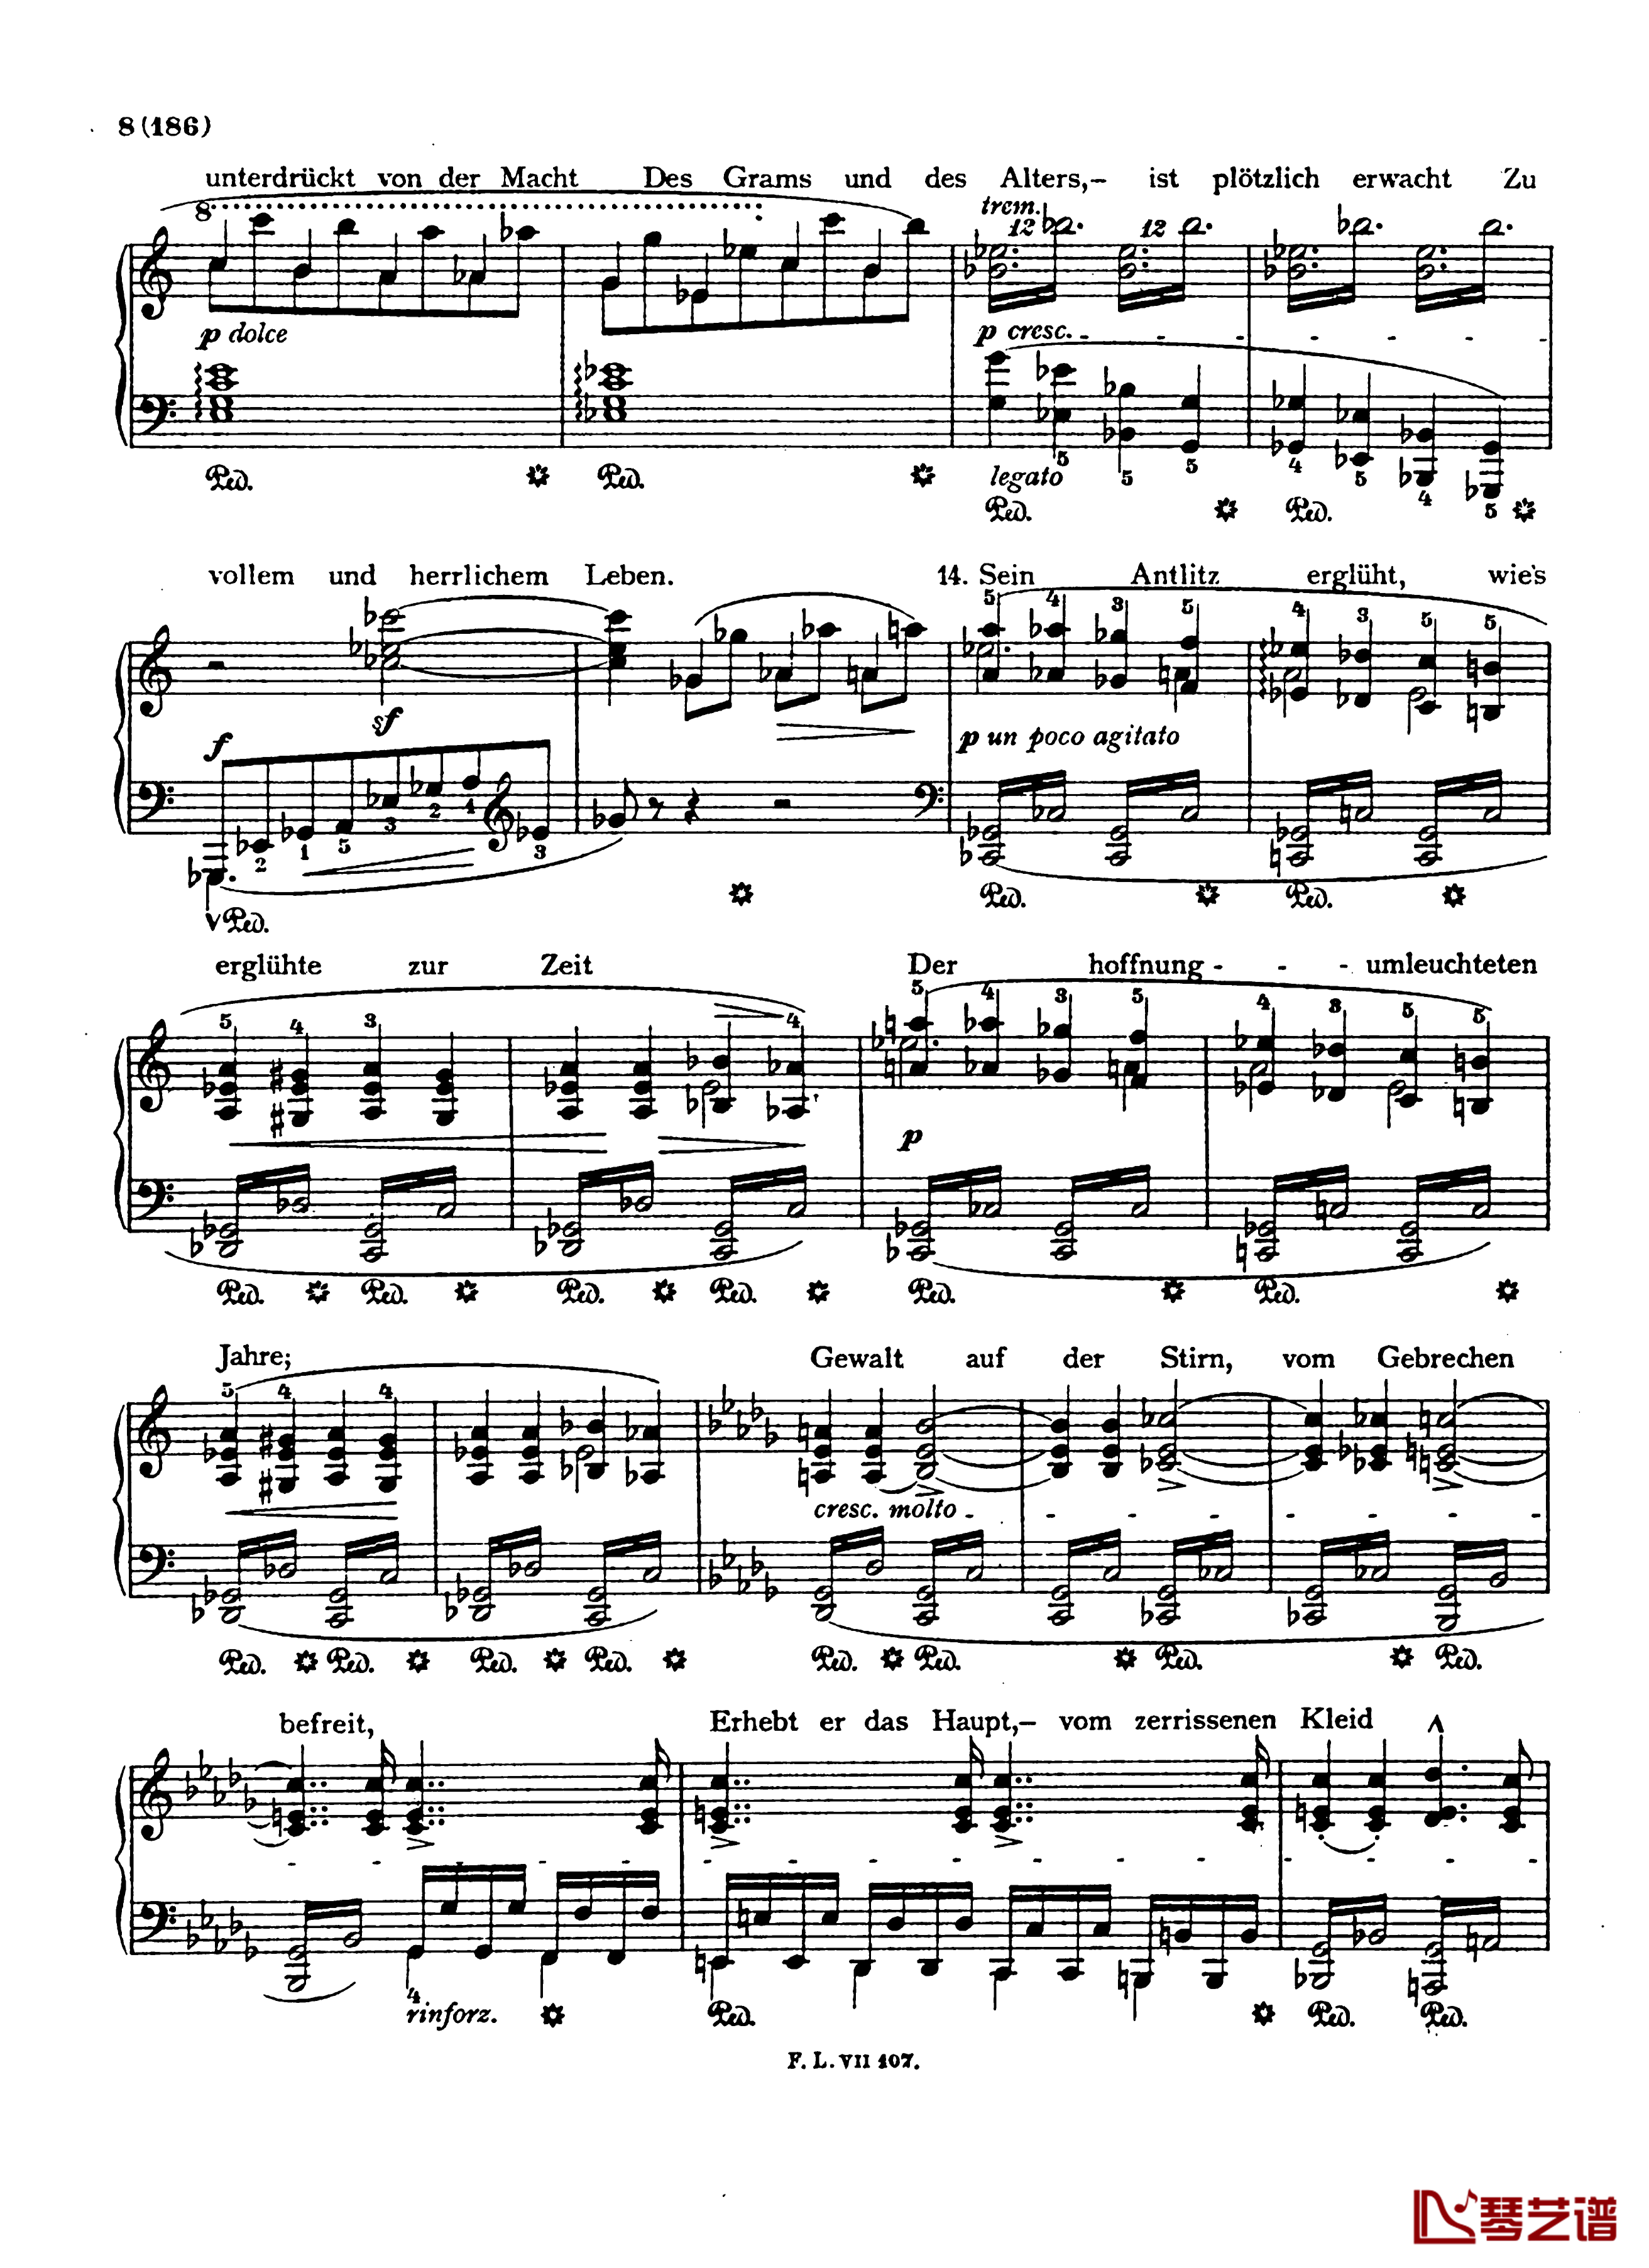  盲人歌手S.350钢琴谱-配乐诗朗诵-李斯特8